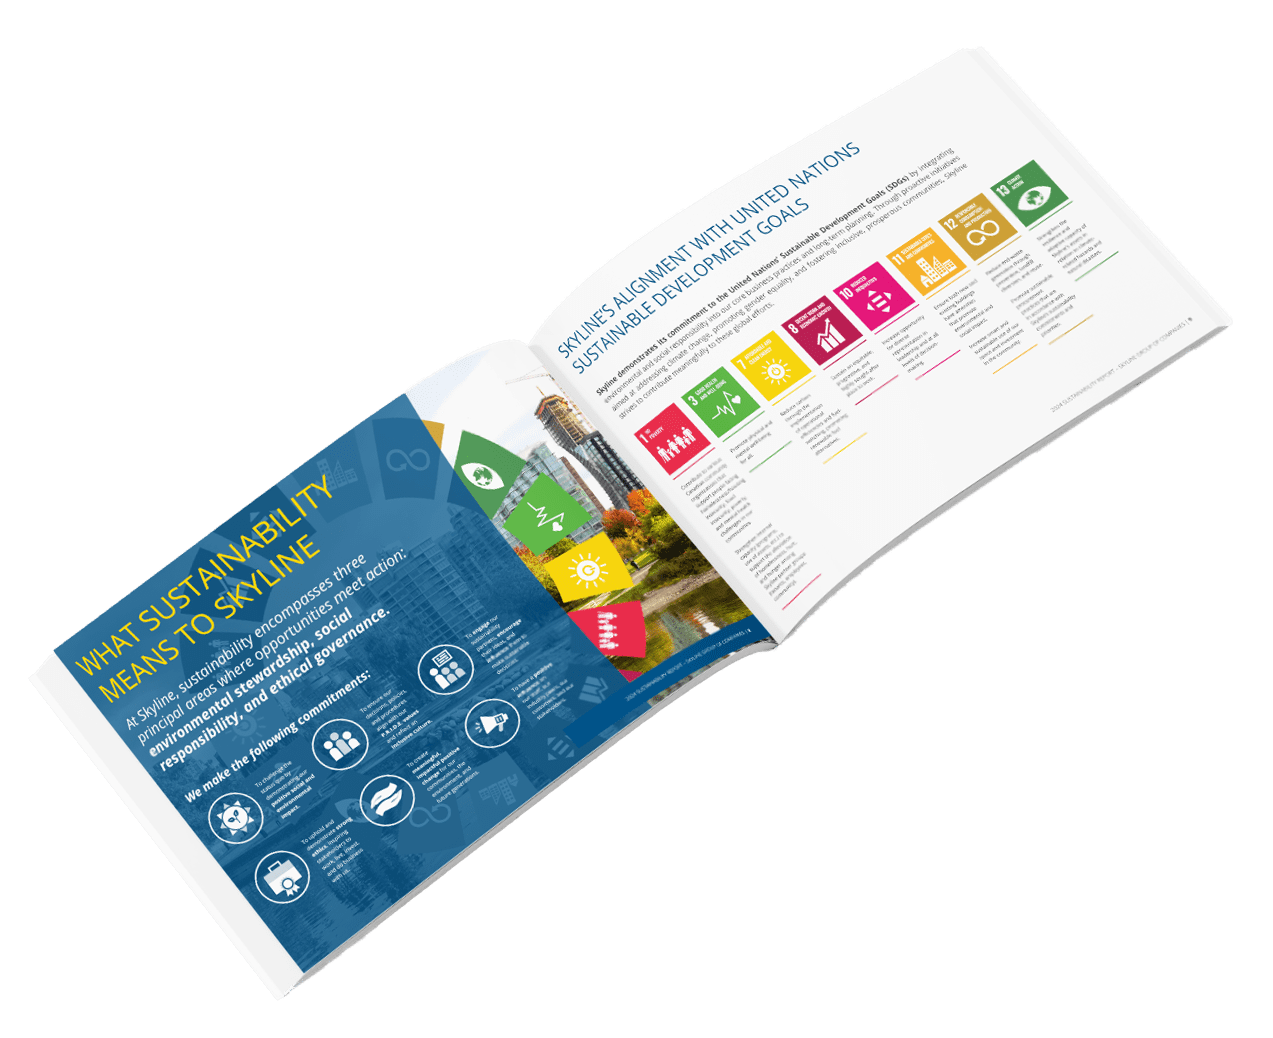 Sustainability PDF Image